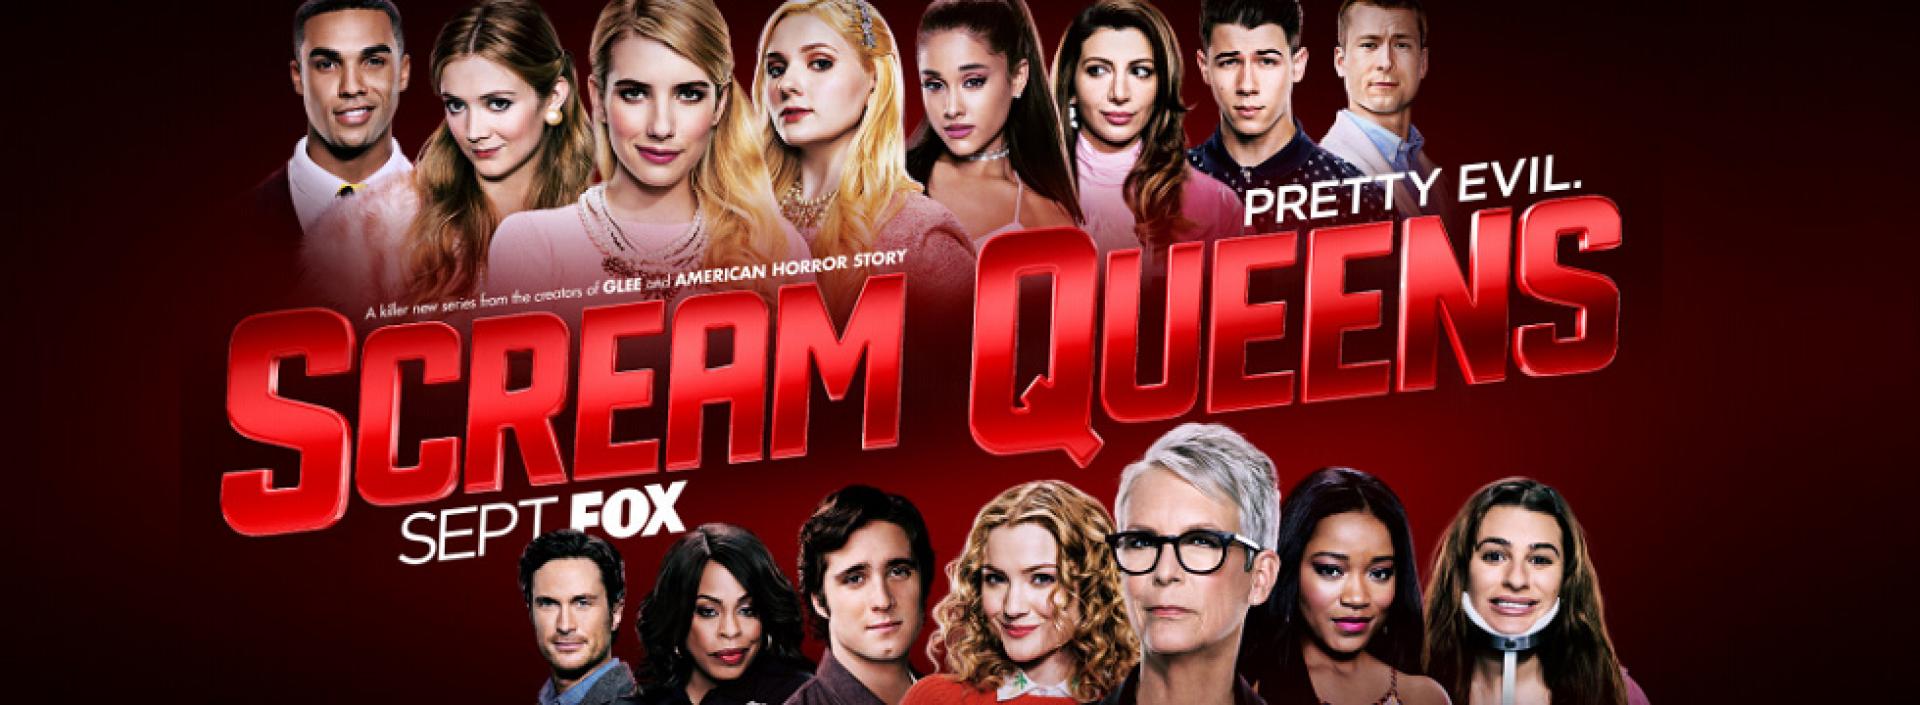 Scream Queens 1x11